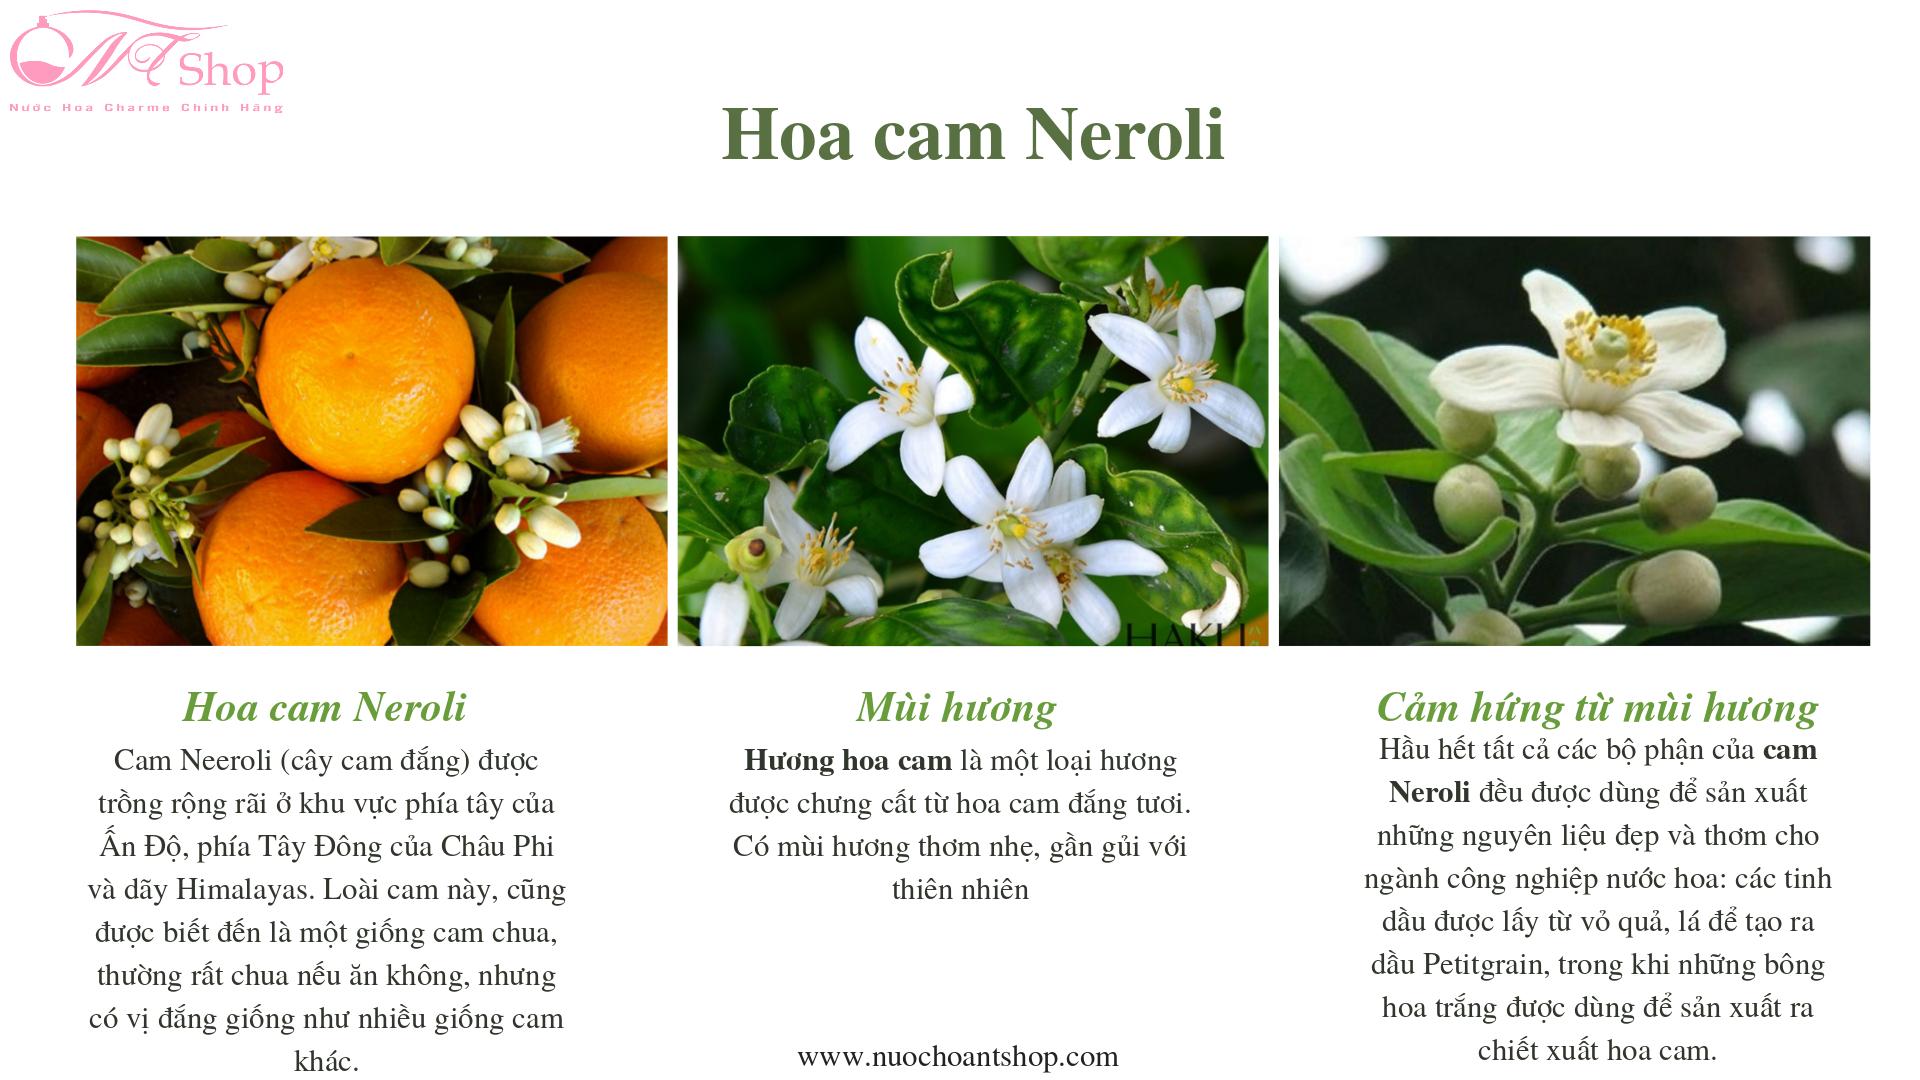 huong-hoa-cam-neroli